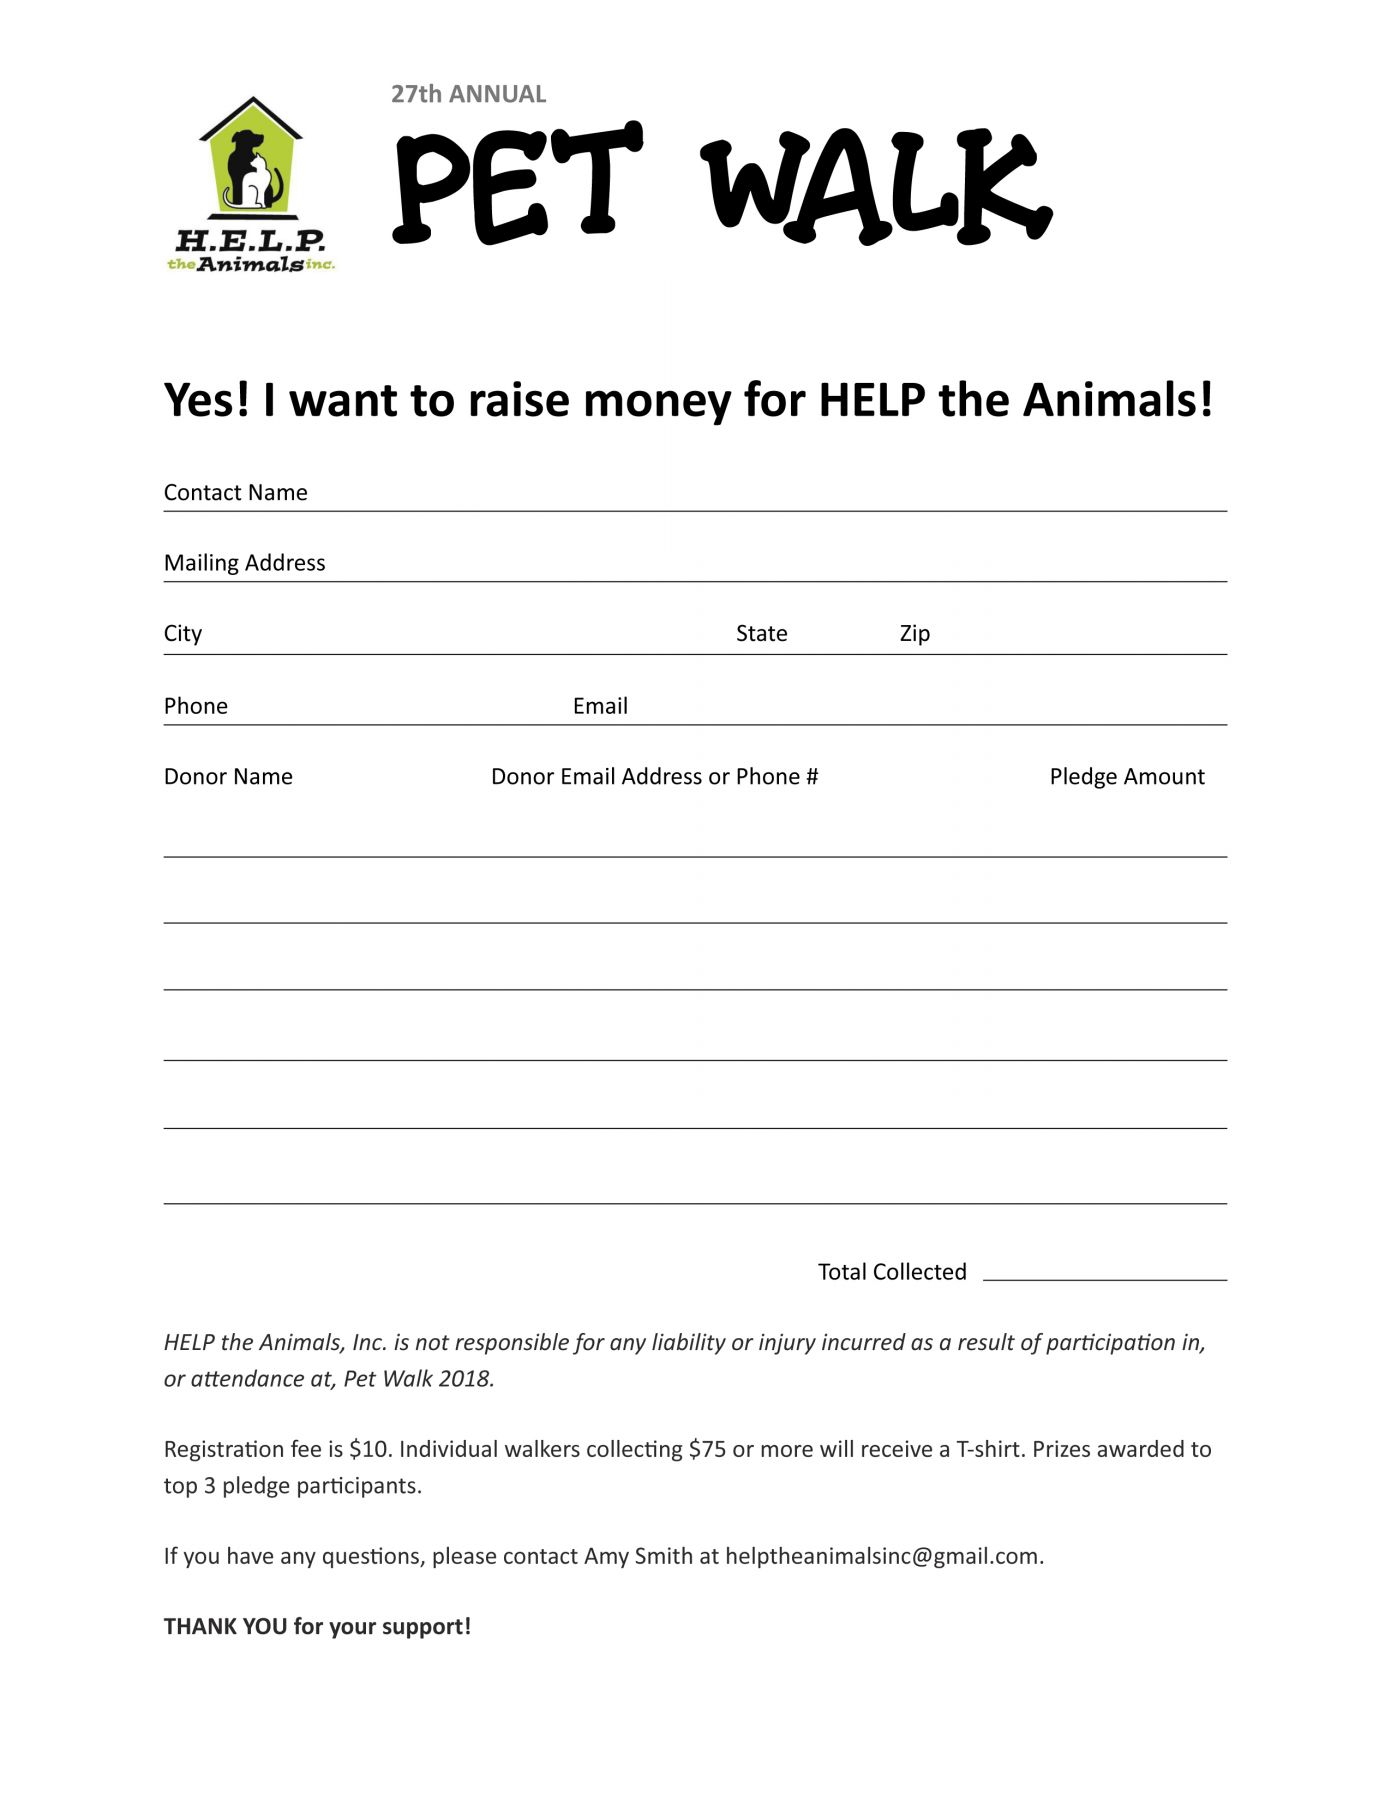 Pet Walk 2018 Pledge Form